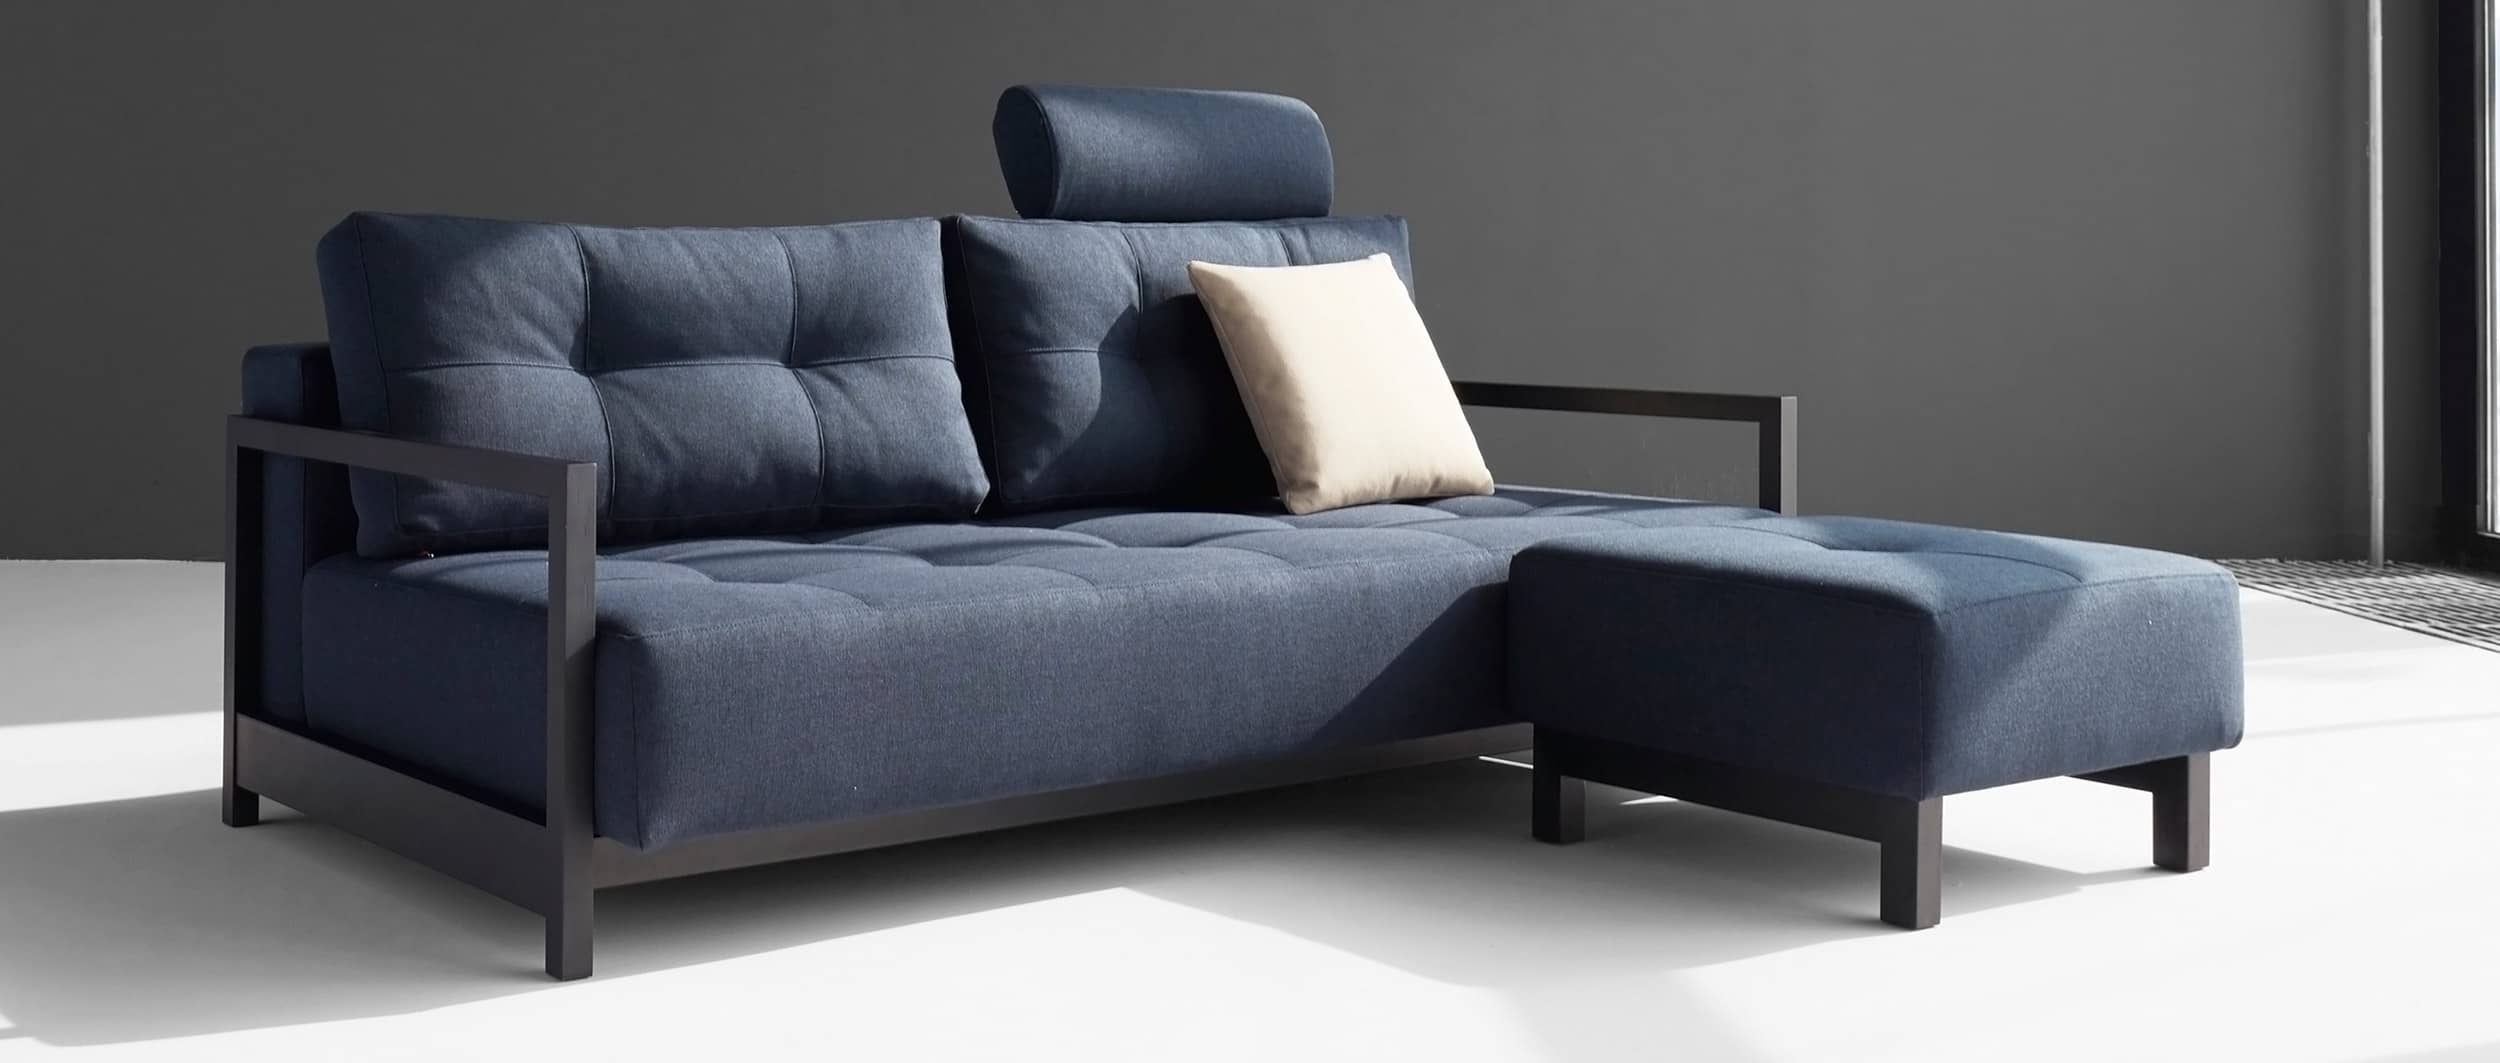 Schlafsofa BIFROST DELUXE EXCESS von Innovation mit Zubehör, Lounge Sofa mit Hocker und Kopfstütze - 155x200